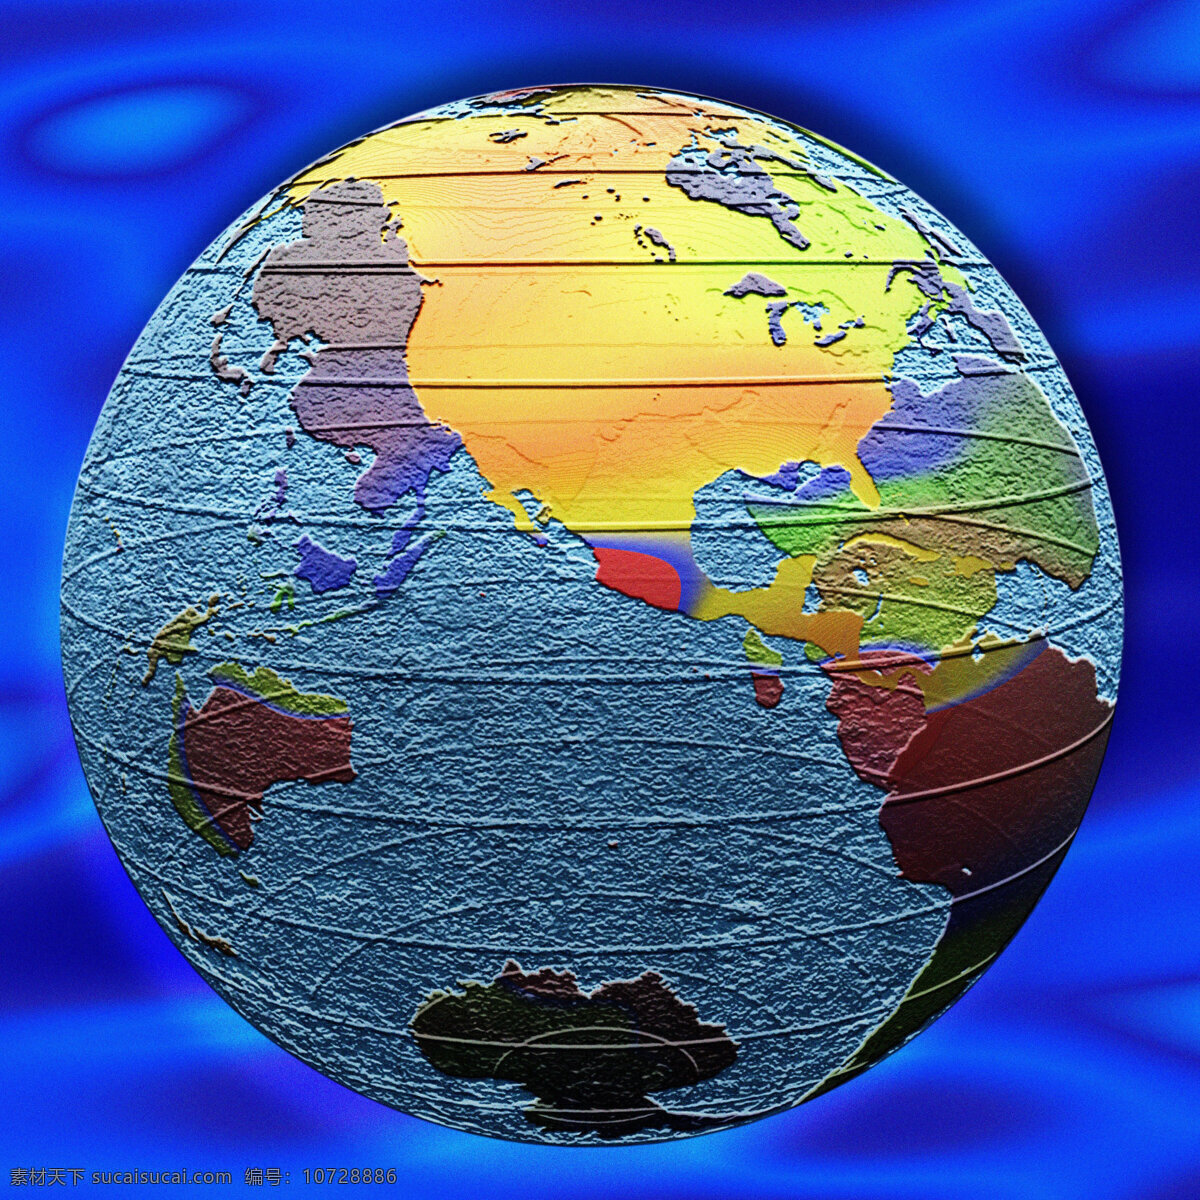 抽象 创意 地球 背景 地球背景 科技 网络 信息 地图 彩色 蓝色背景 高清地球图片 高清图片 地球图片 环境家居